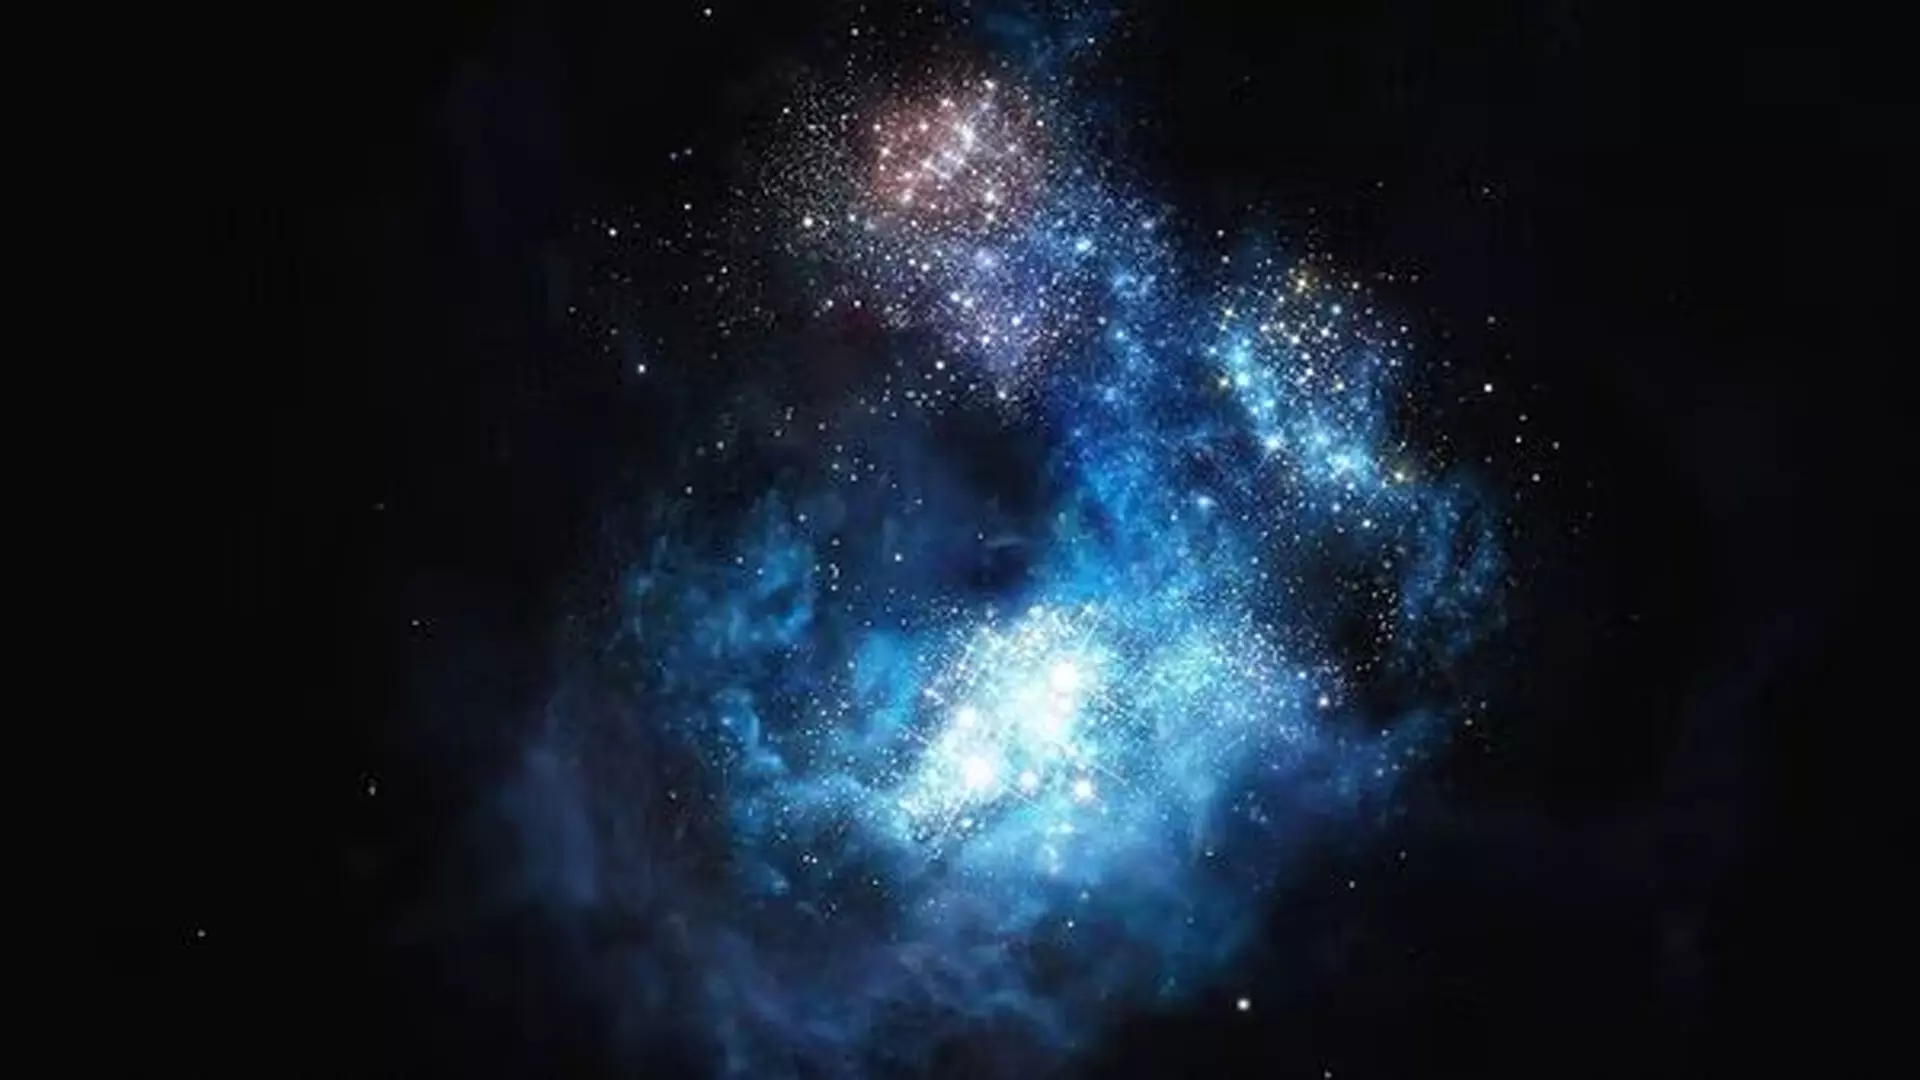 वैम्पायर न्यूट्रॉन स्टार विस्फोट निकट-प्रकाश-गति जेट घटना से जुड़ा हुआ है: वैज्ञानिक